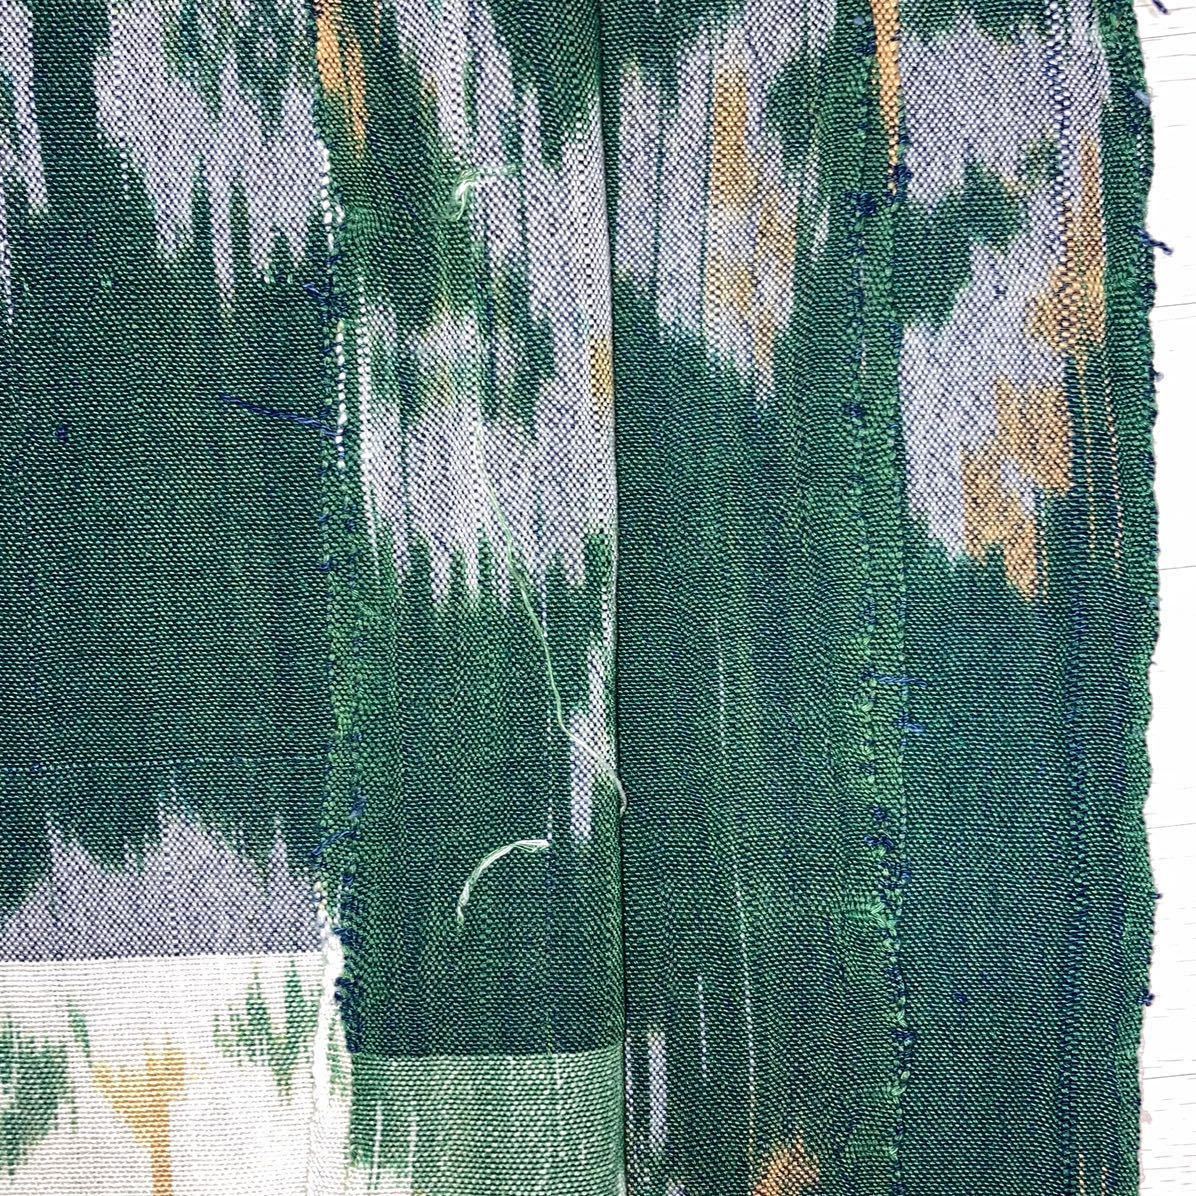 【保管品】未使用品 アジアンマルチカバー グリーン 約138×236cm インテリア ソファーカバー イカット織 インドネシア 絣布 織物の画像6